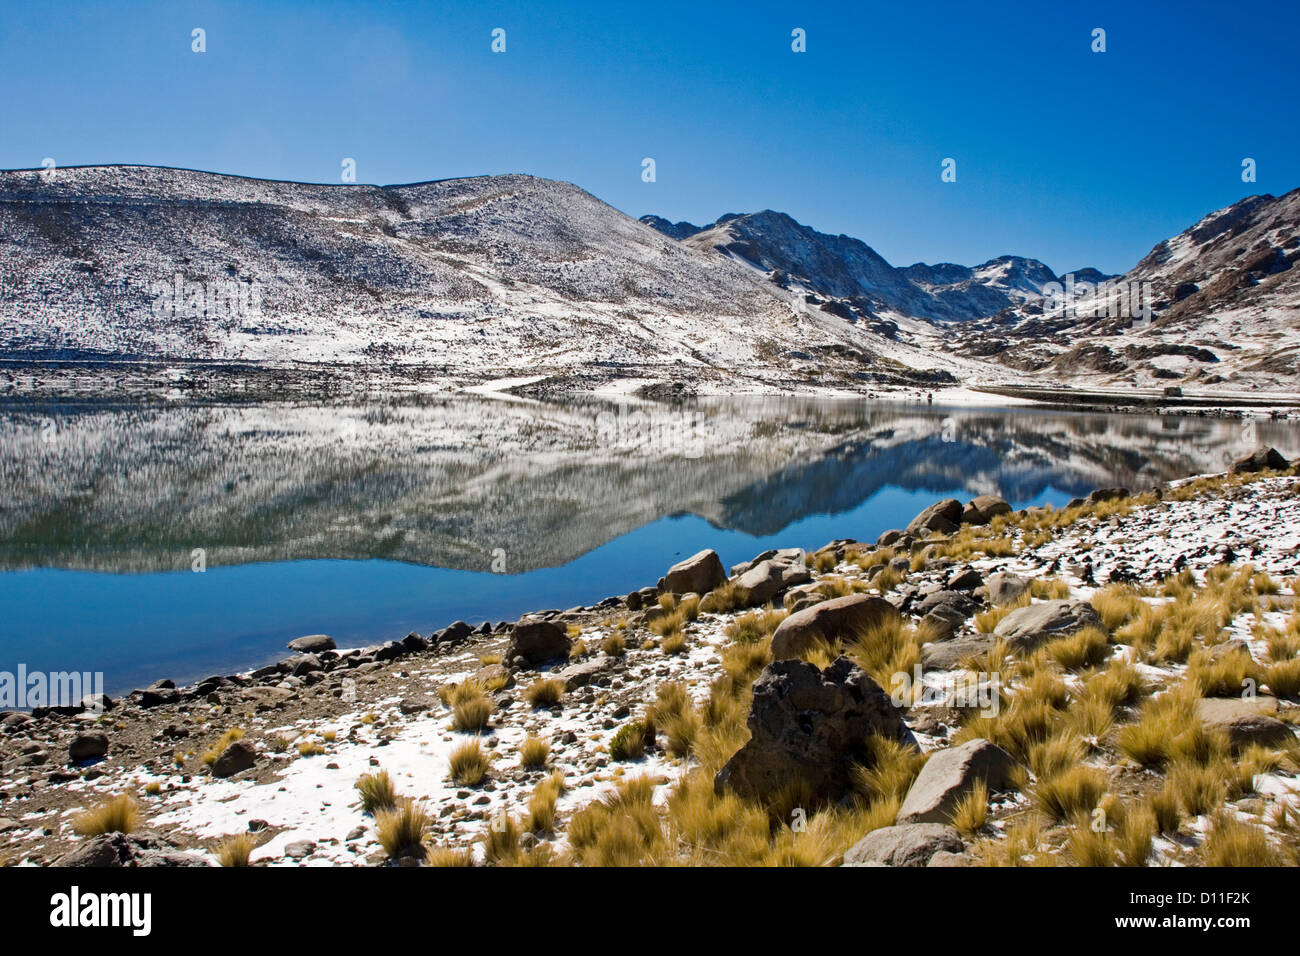 Paesaggio boliviano con montagne coperte di neve e calme acque azzurre della laguna di San Sebastian nei pressi di Potosí, montagne delle Ande, Foto Stock